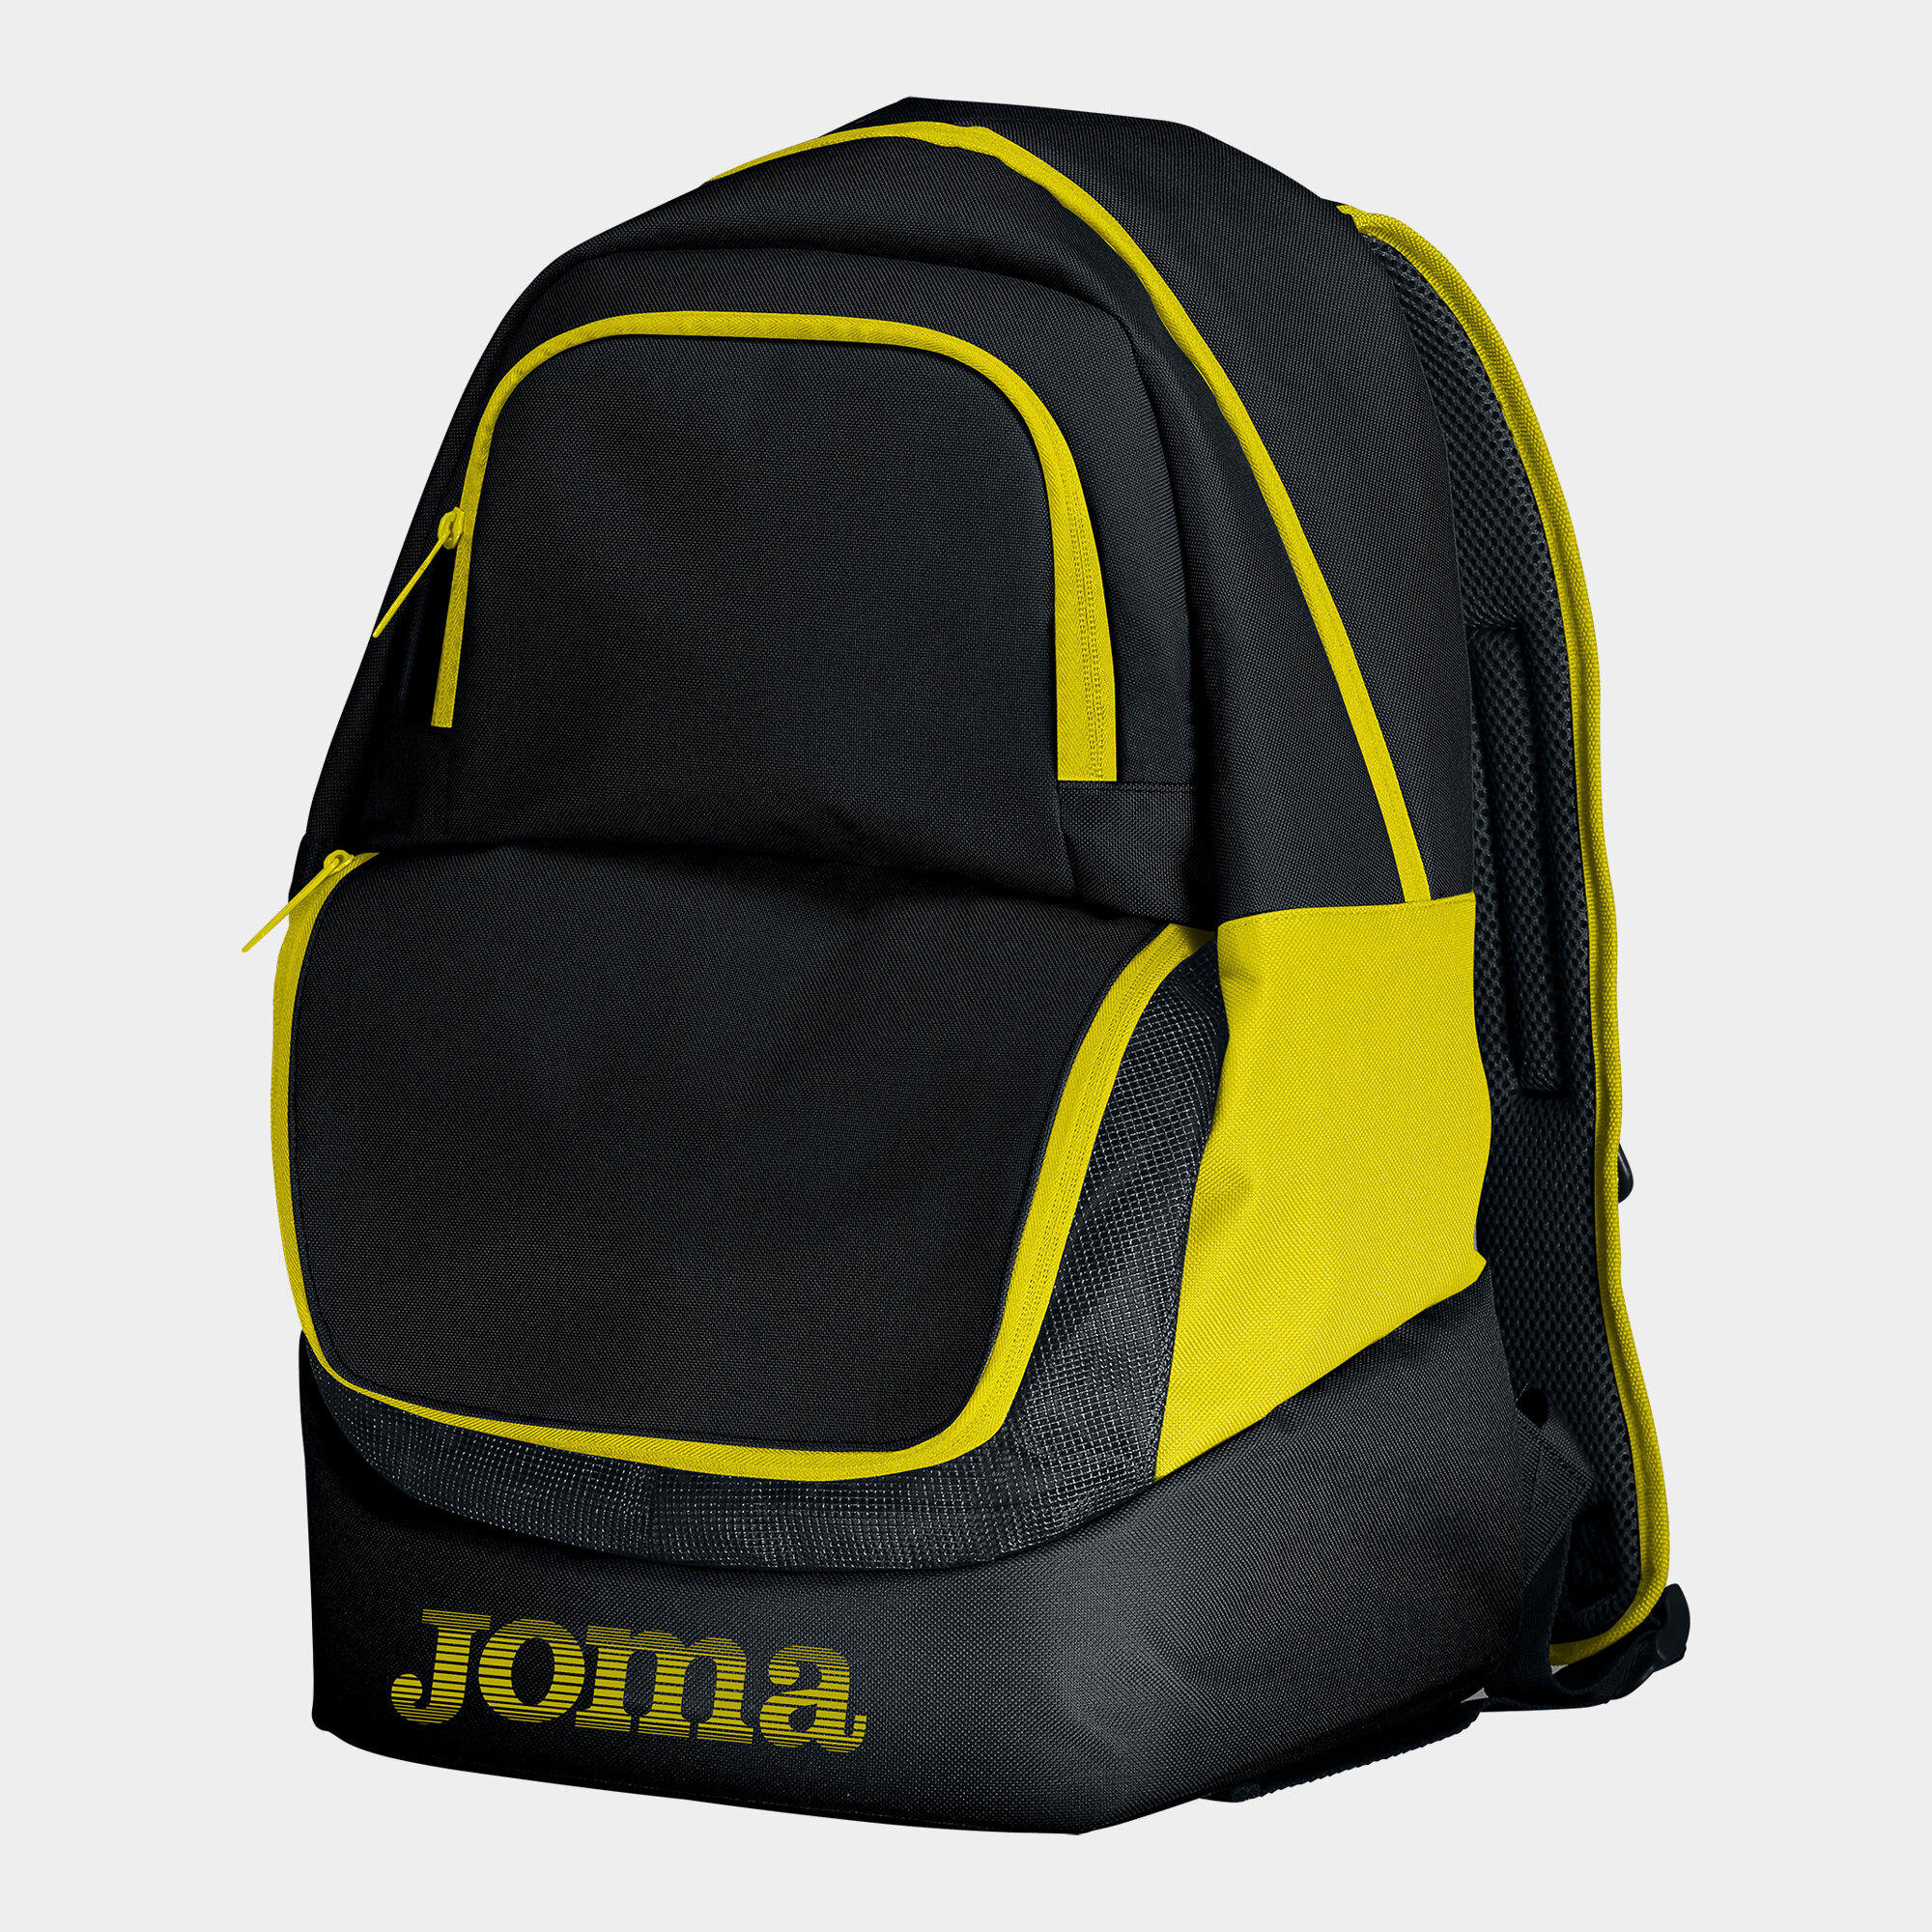 Backpack - shoe bag Diamond II black yellow